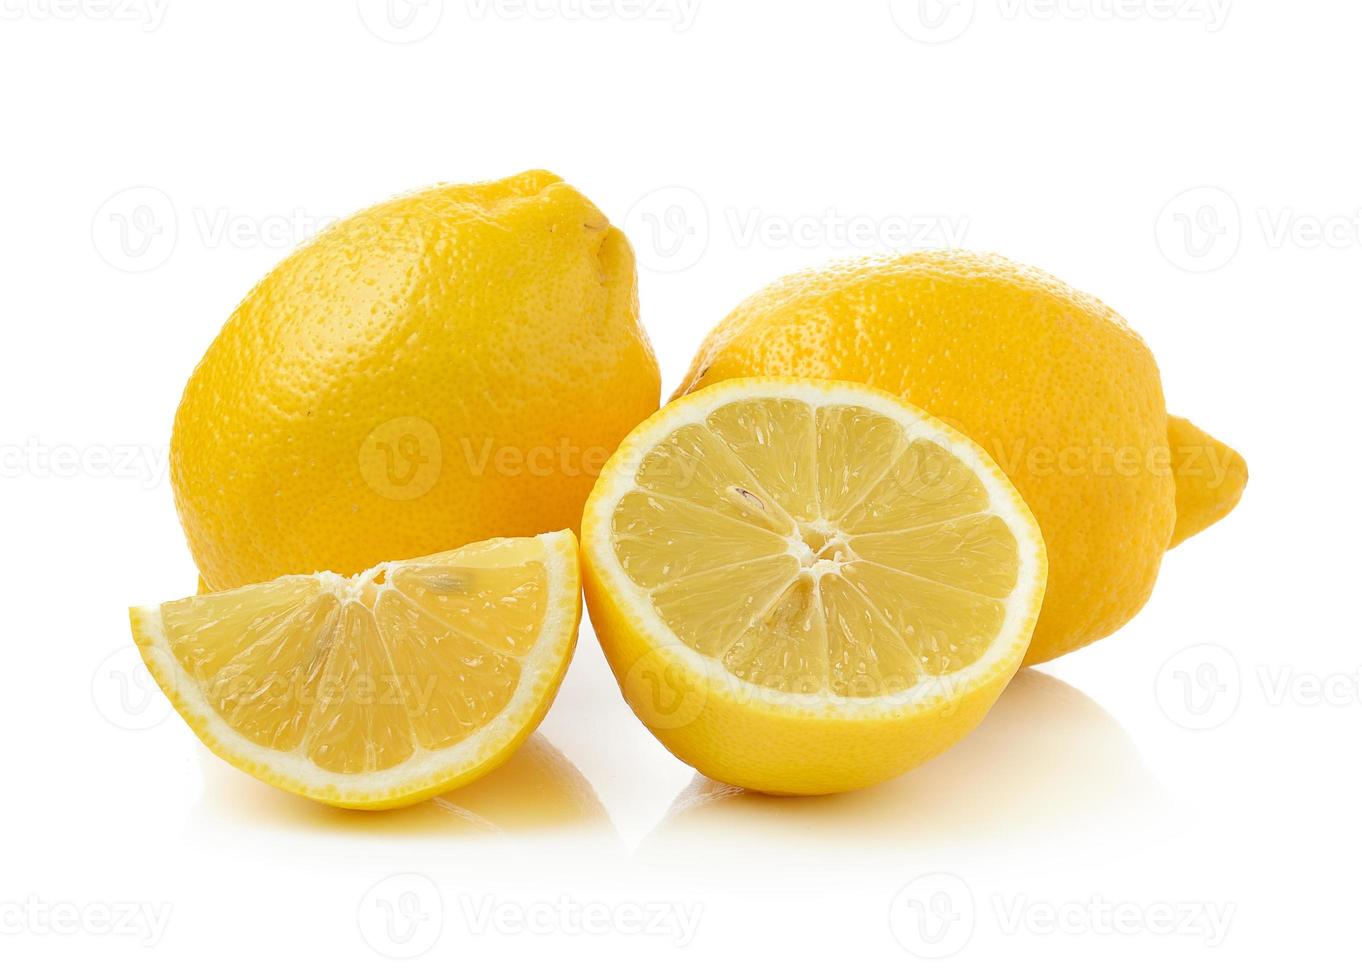 färsk citron isolerad på en vit bakgrund foto